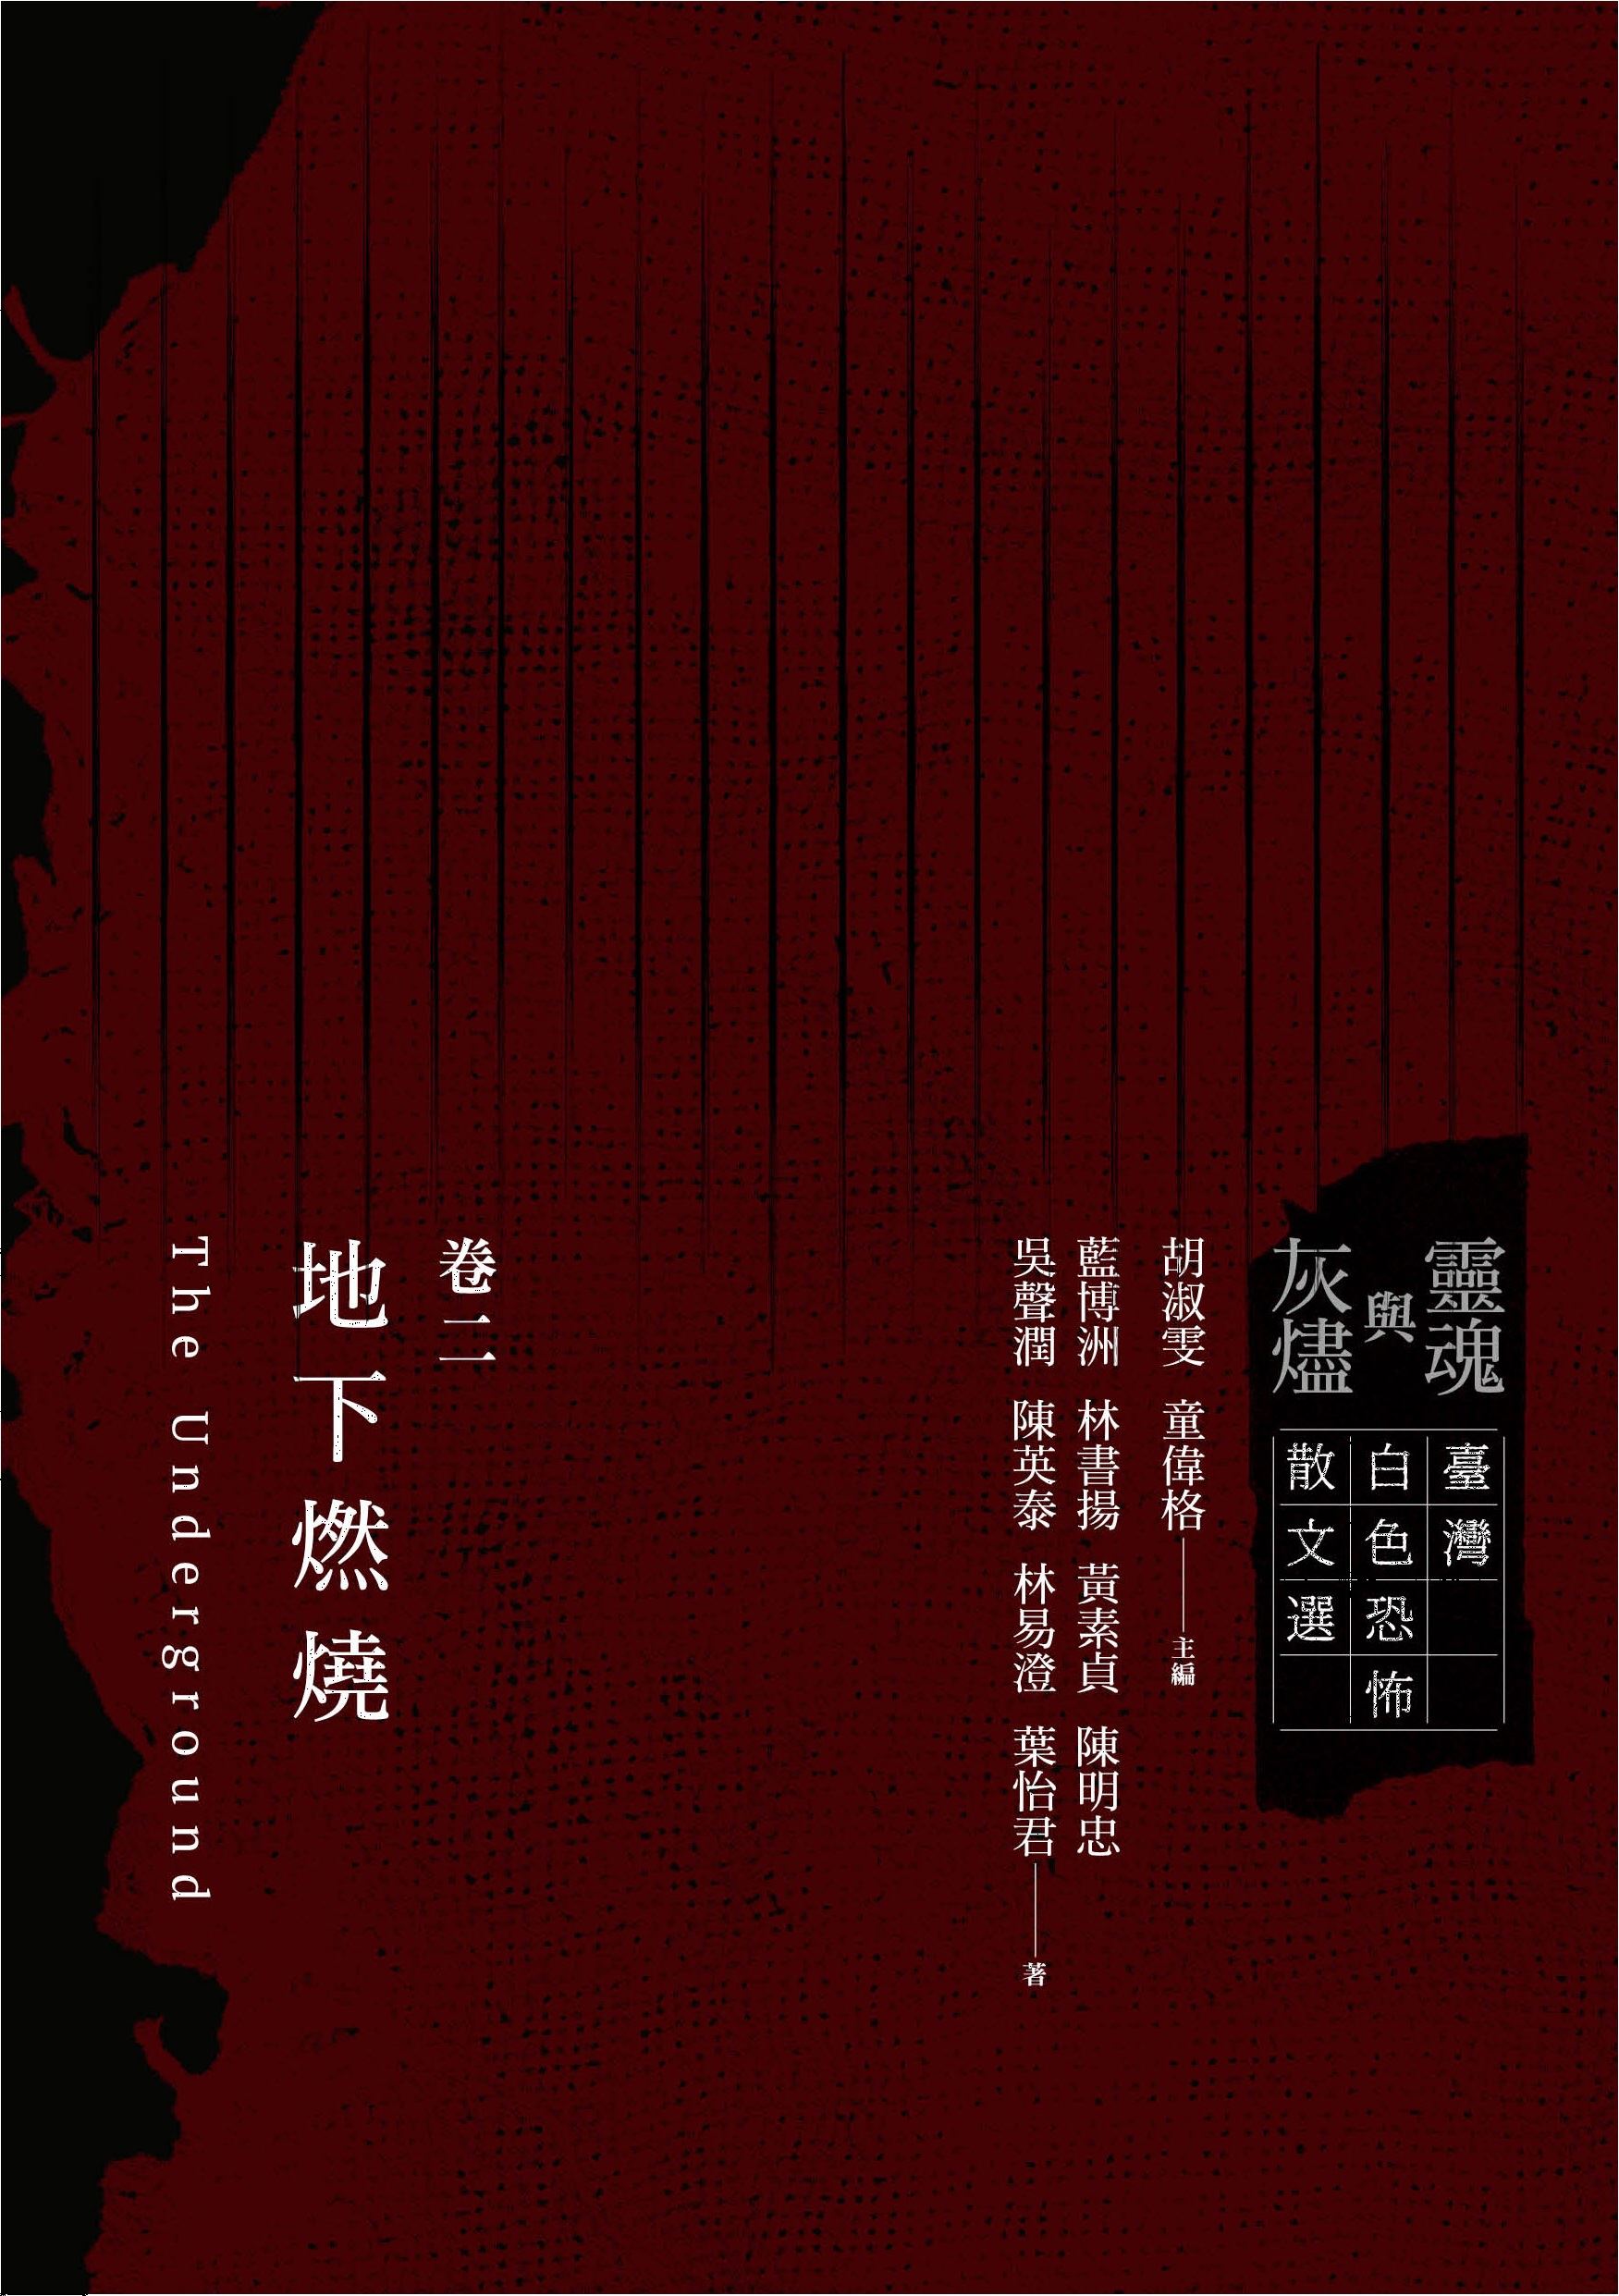 靈魂與灰燼：臺灣白色恐怖散文選 卷二 地下燃燒 的圖說